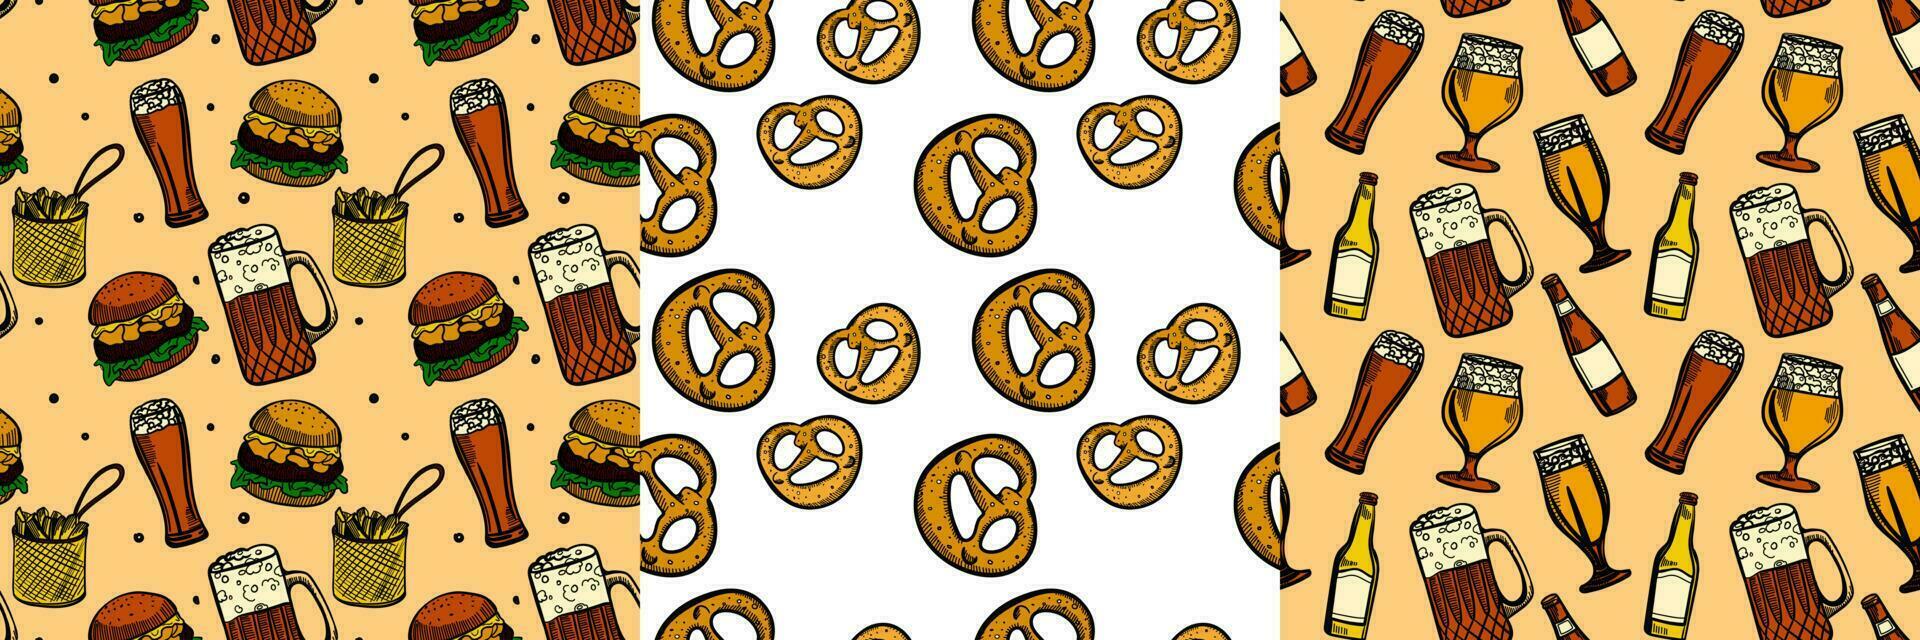 straat voedsel naadloos patroon set. omhulsel papier ontwerp. geel gravure stijl illustraties van hamburger en bier. eps10 vector illustratie.